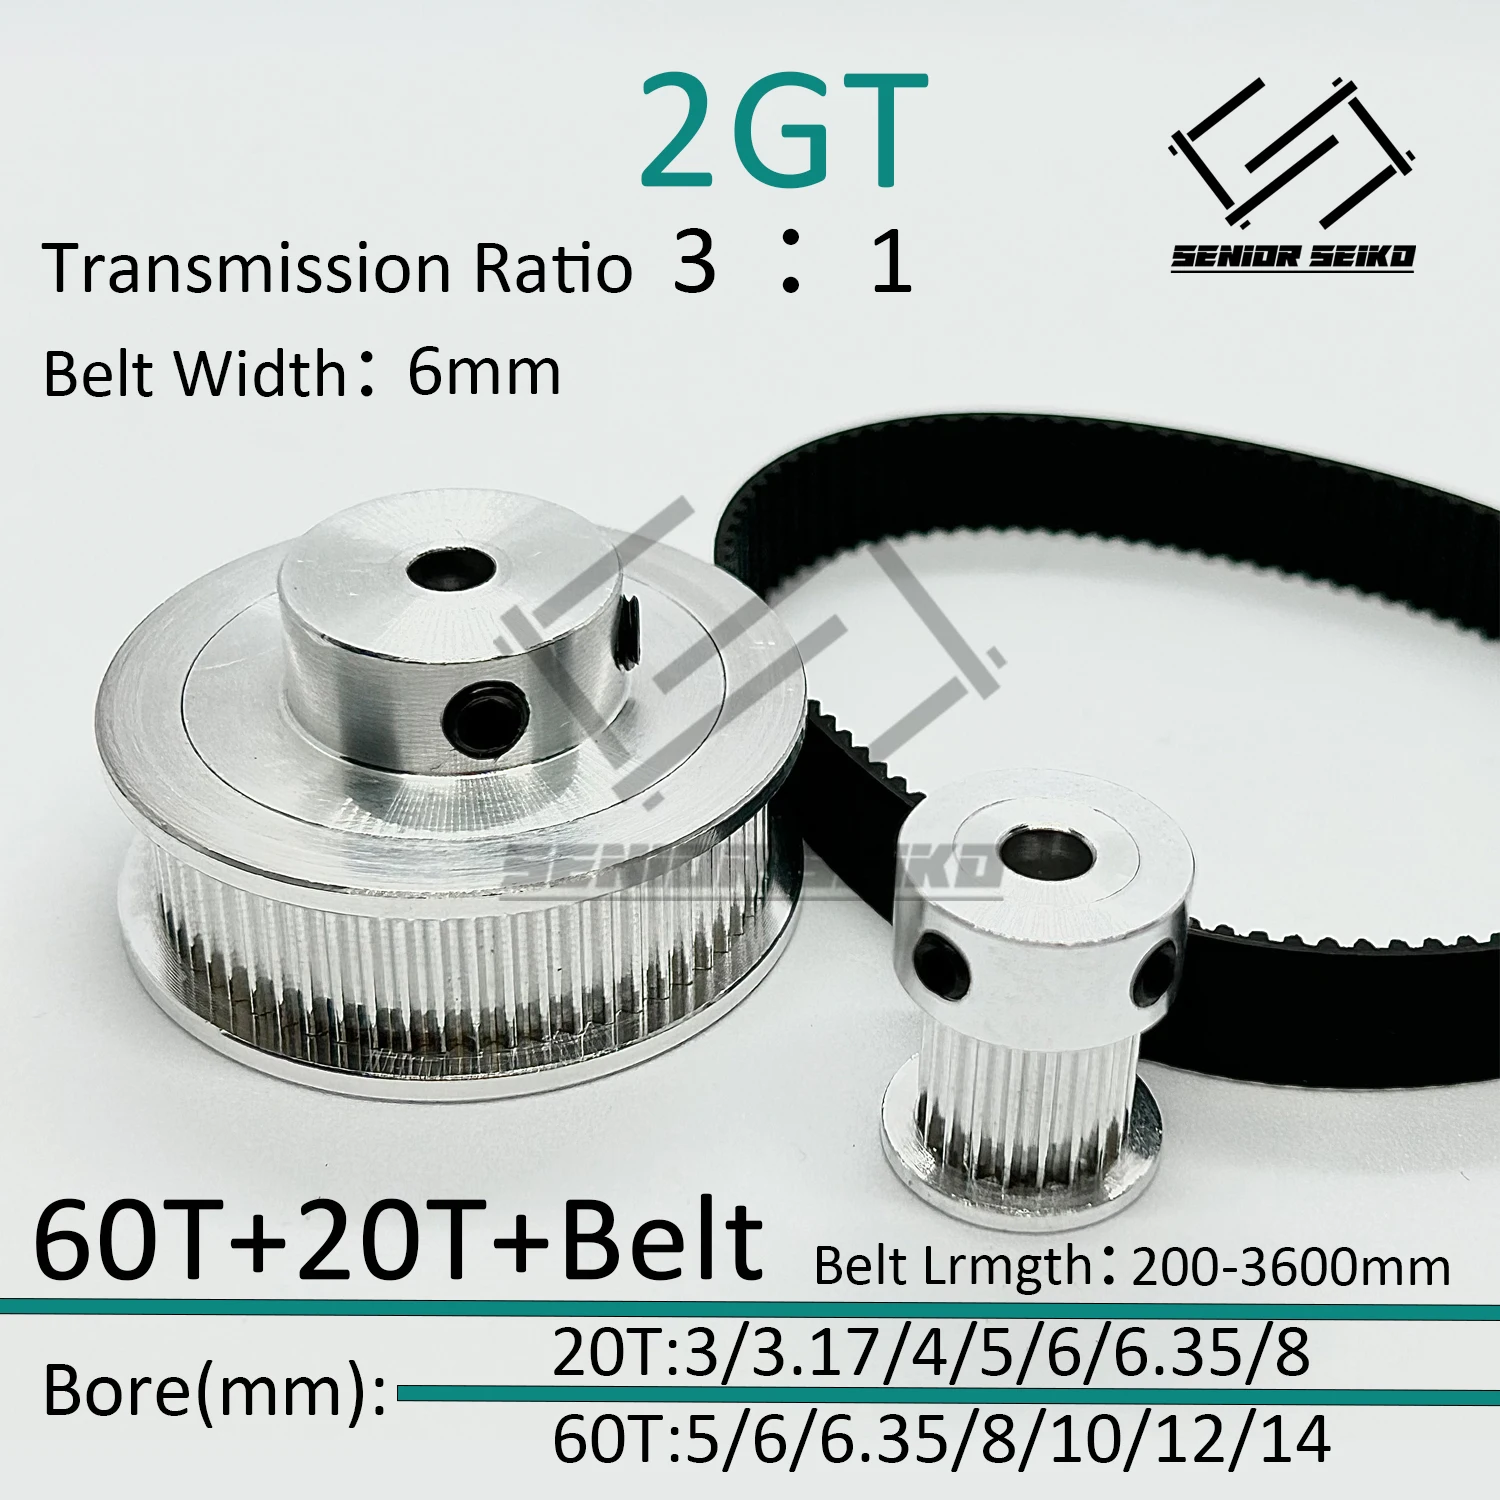 

2GT 2M 20Teeth 60T GT2 60Teeth 20T Timing Belt Pulley Set Belt Width 6mm Bore 3~14mm 3:1 Wheel Synchronous Pulley Belt Kit